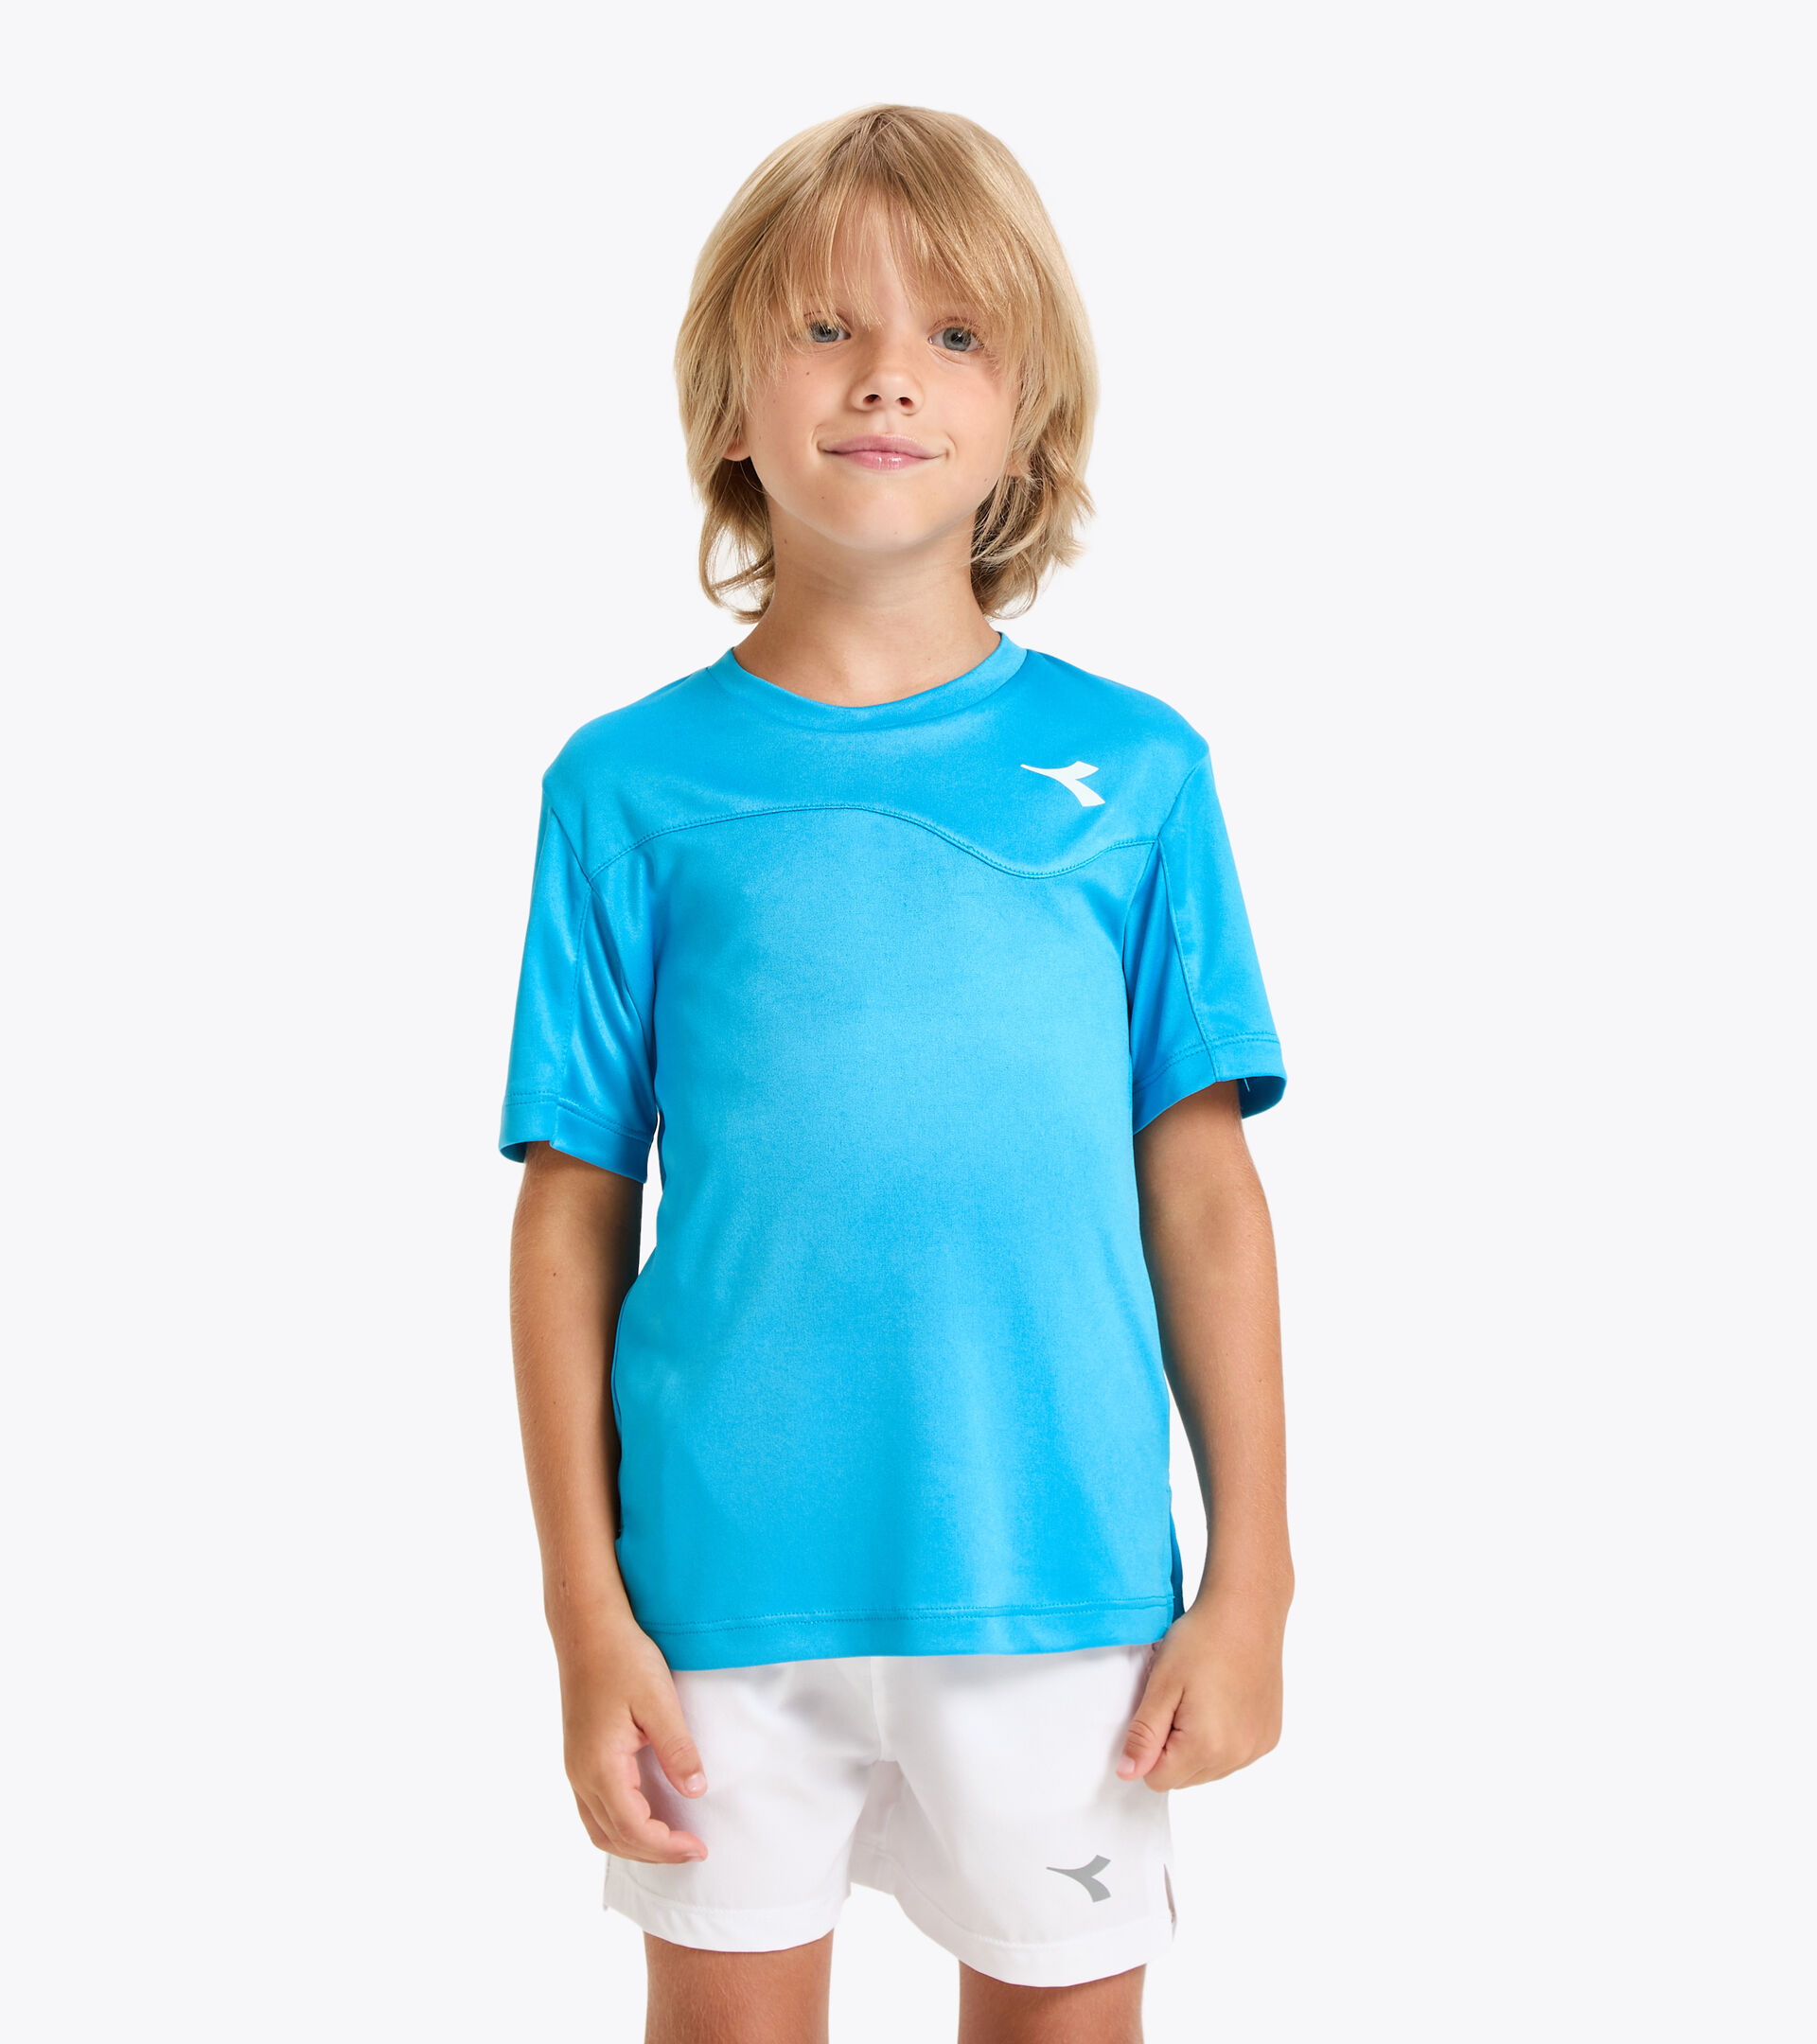 Camiseta de tenis - Junior J. T-SHIRT TEAM AZUL REAL FLUO - Diadora